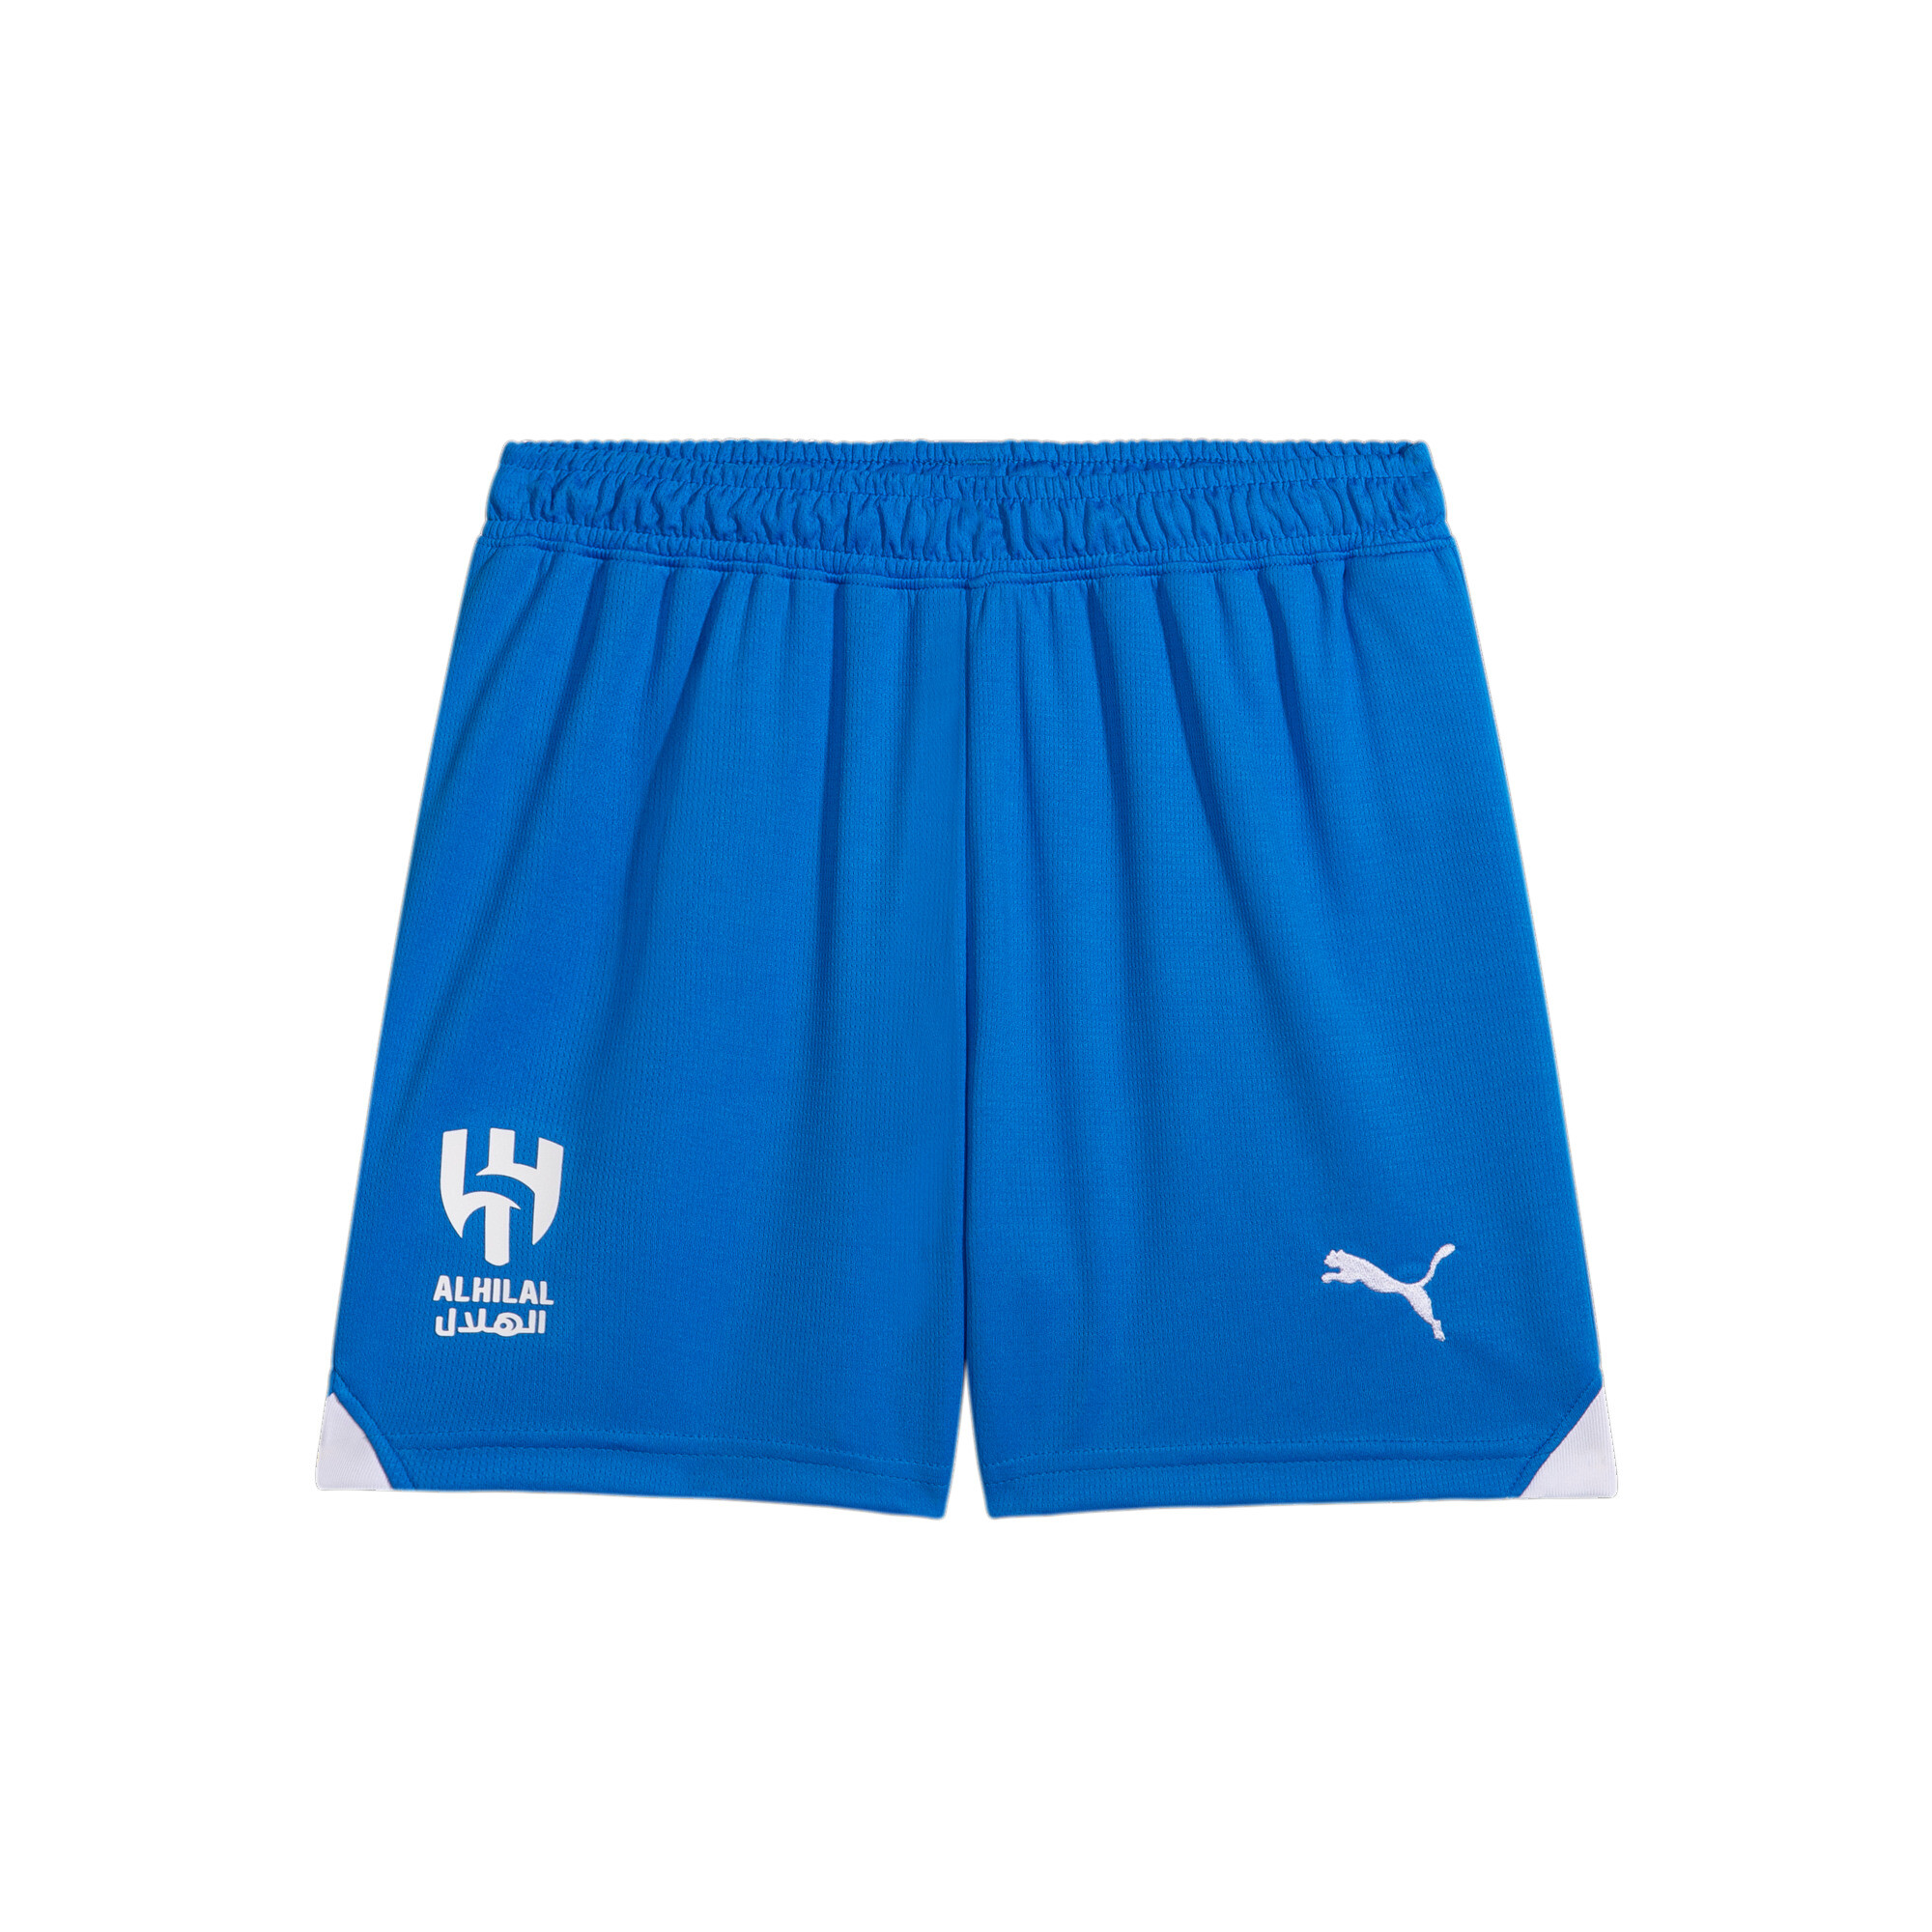 PUMA Al Hilal 23/24 Replica Shorts In Blue, Size 15-16 Youth